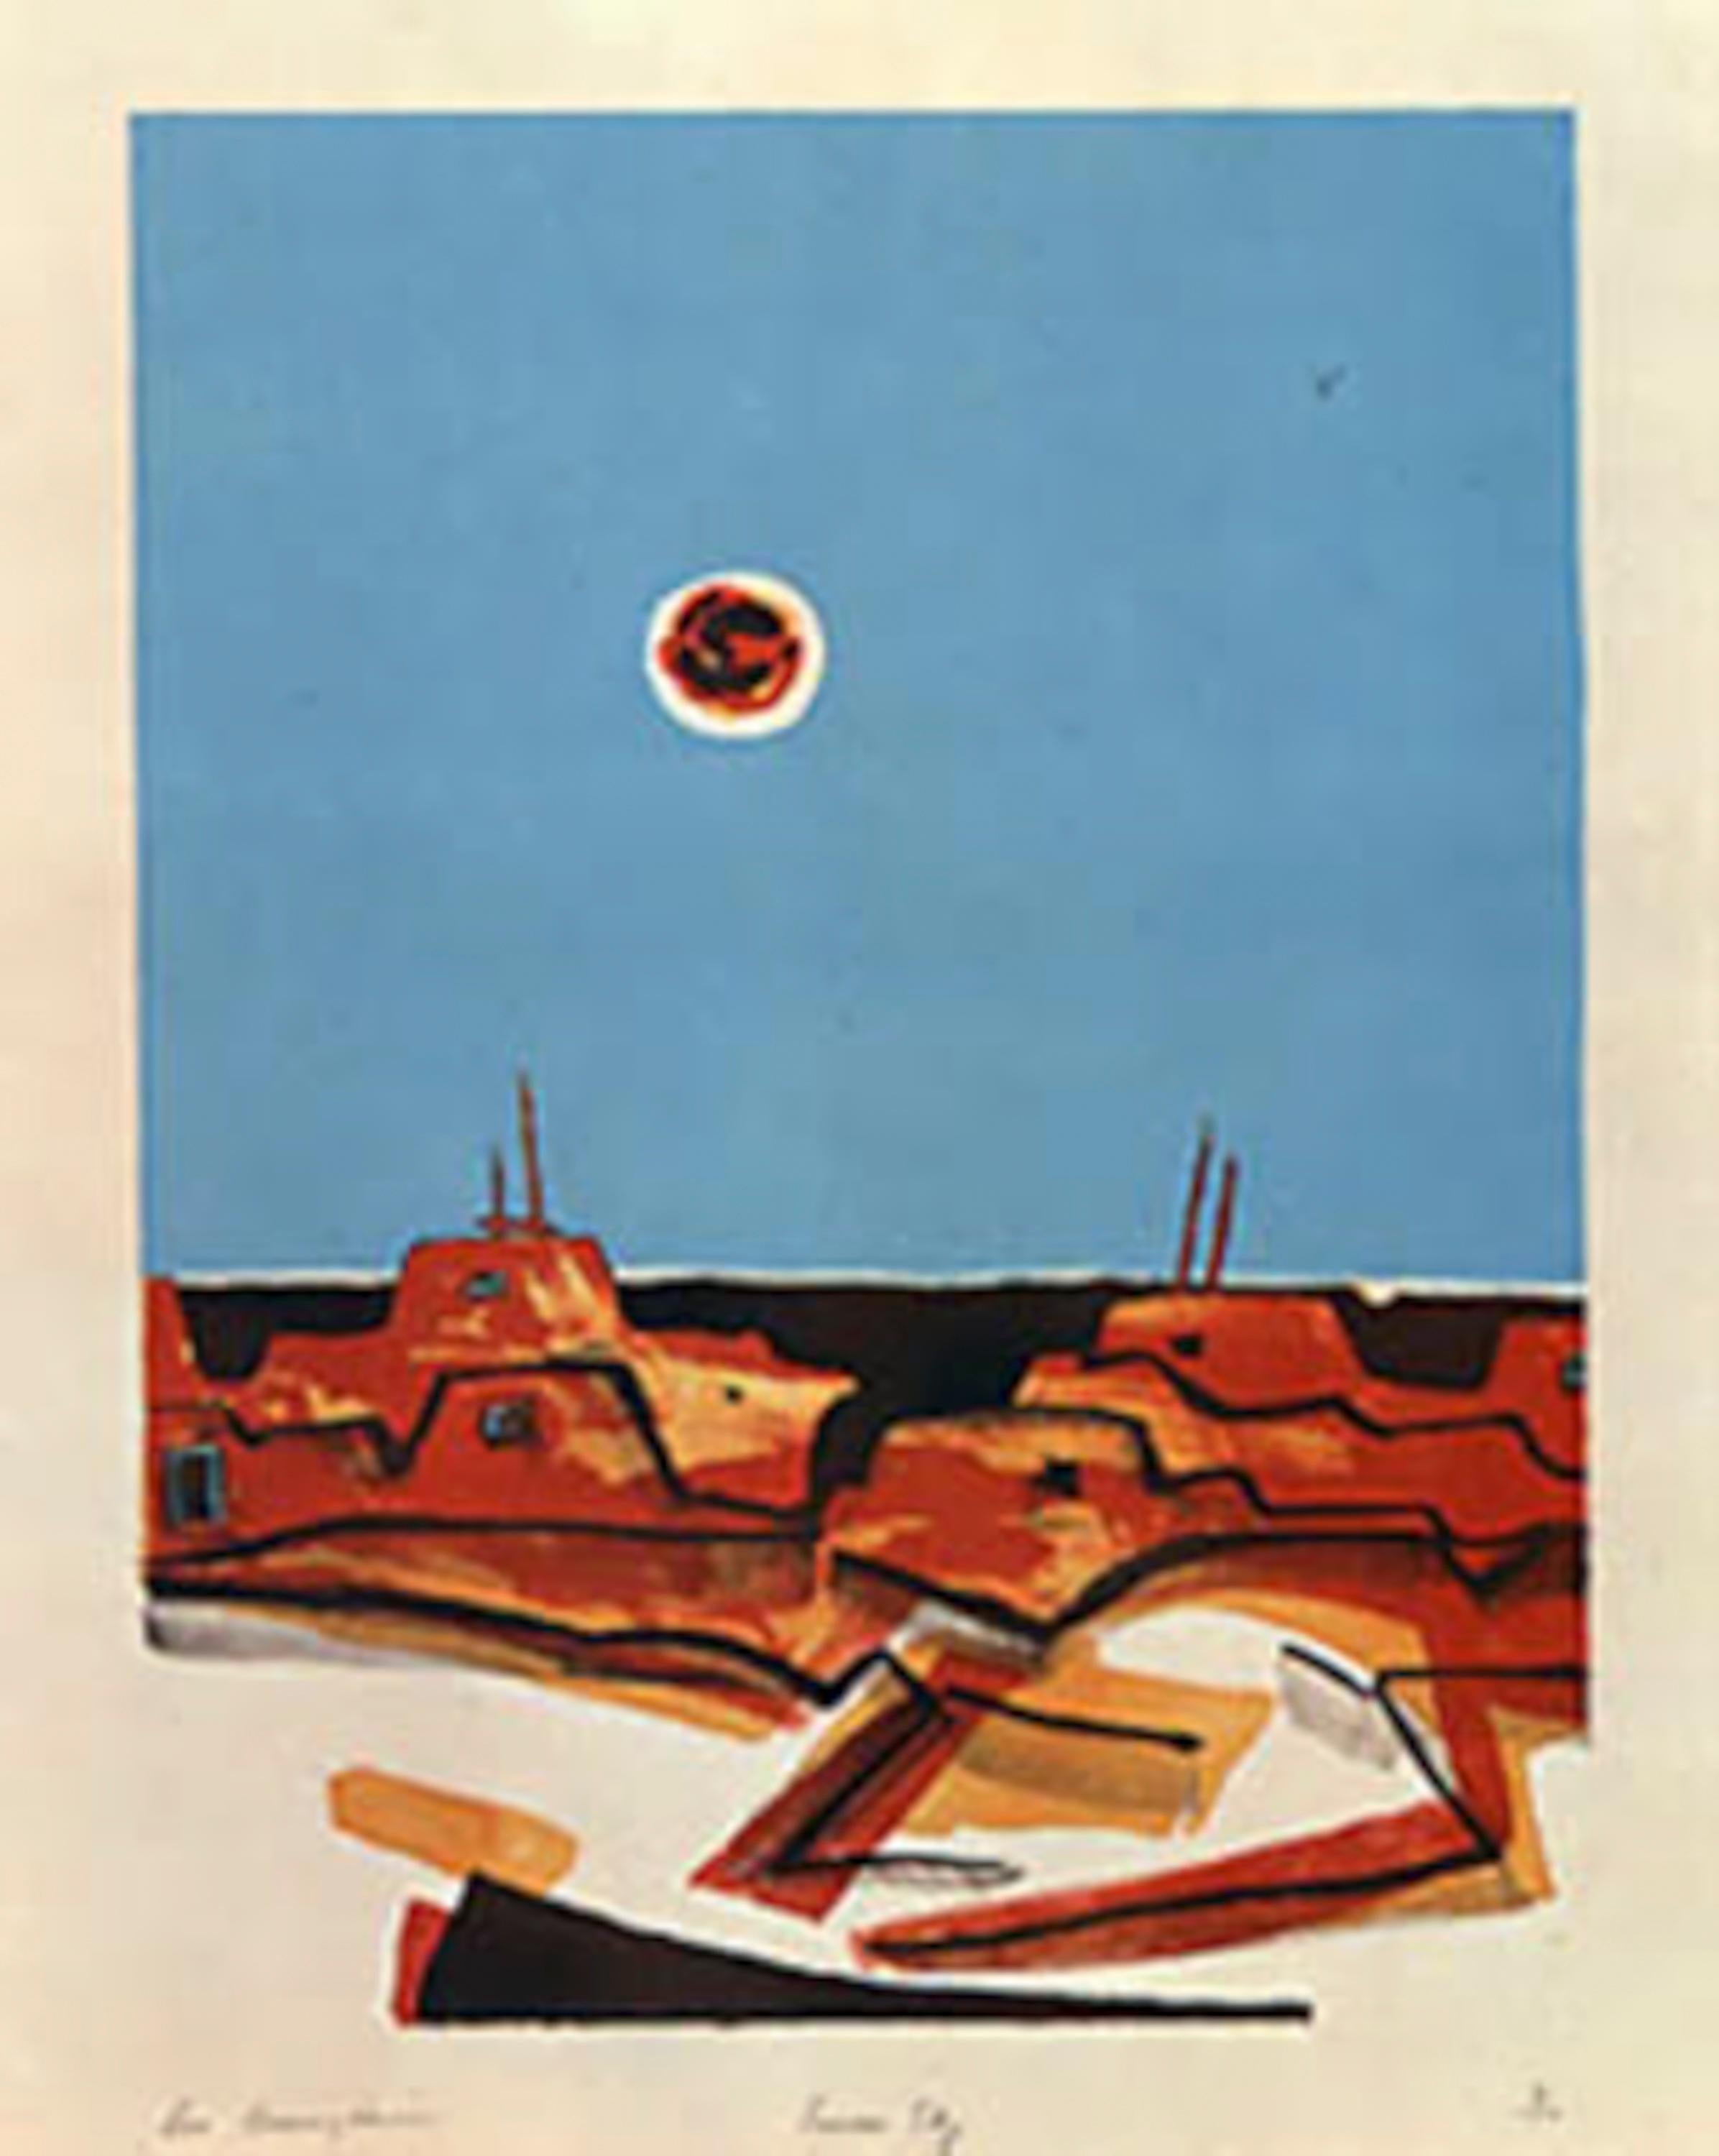 Sky d'été, lithographie en édition limitée, paysage, désert, turquoise, orange - Print de Dan Namingha